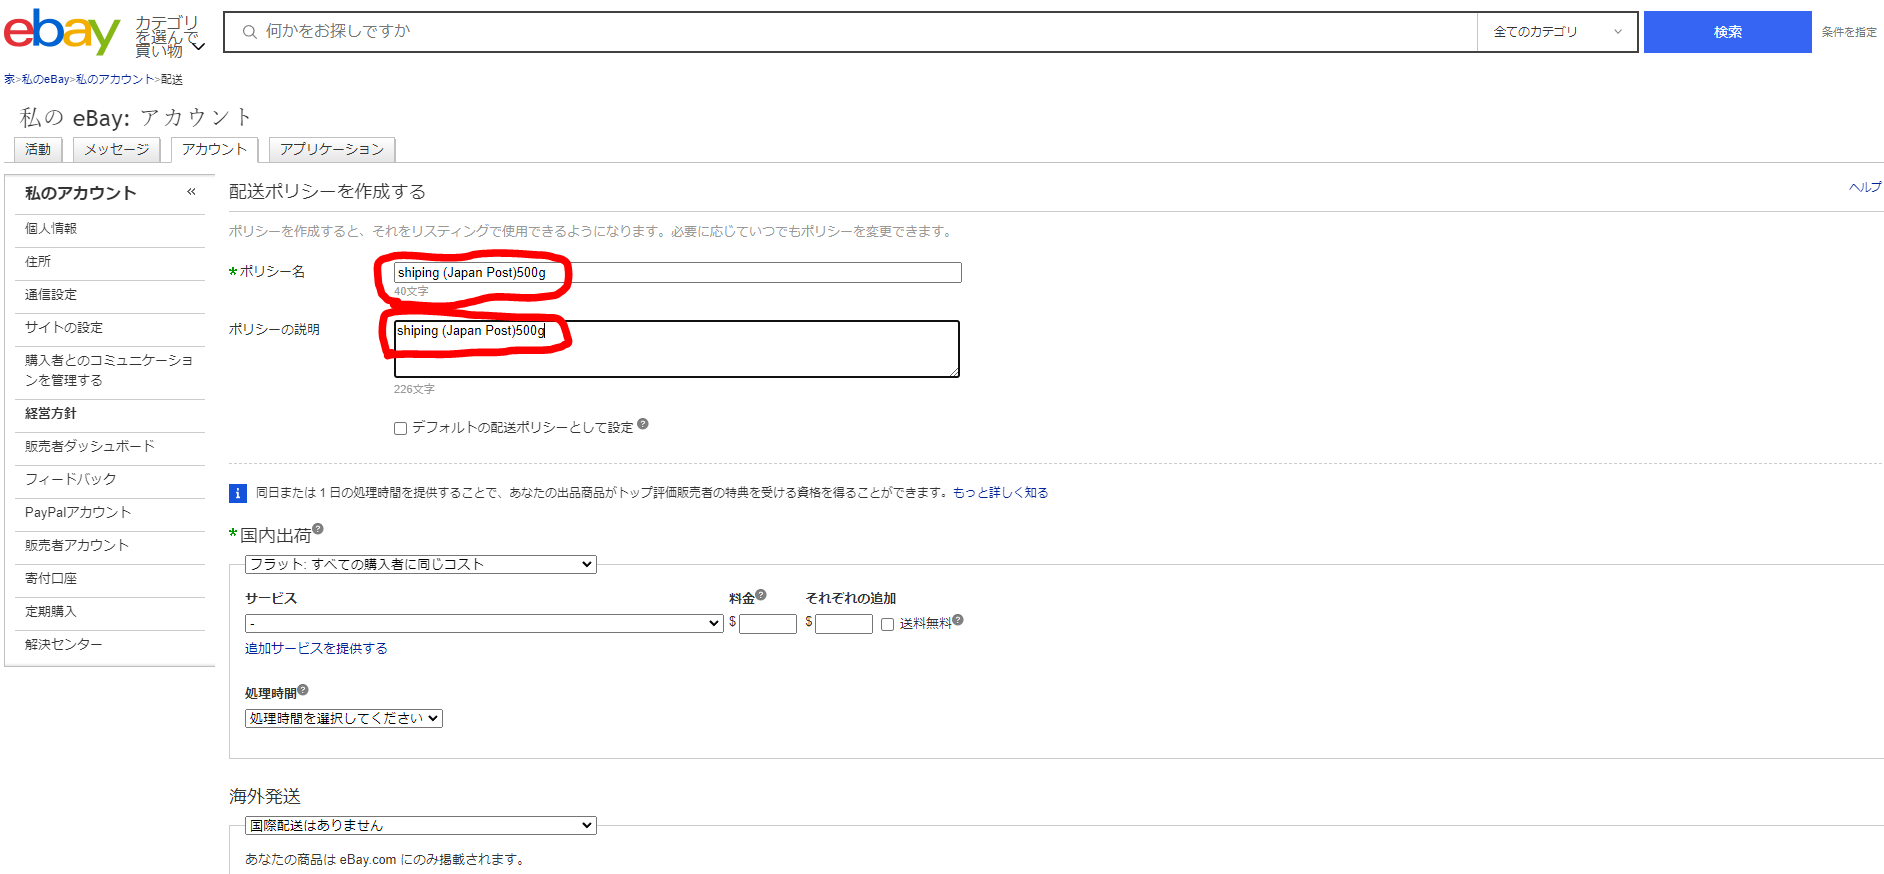 dorublog | eBay出品時の送料のオススメ設定 初出品者向け【日本郵便 EMS】